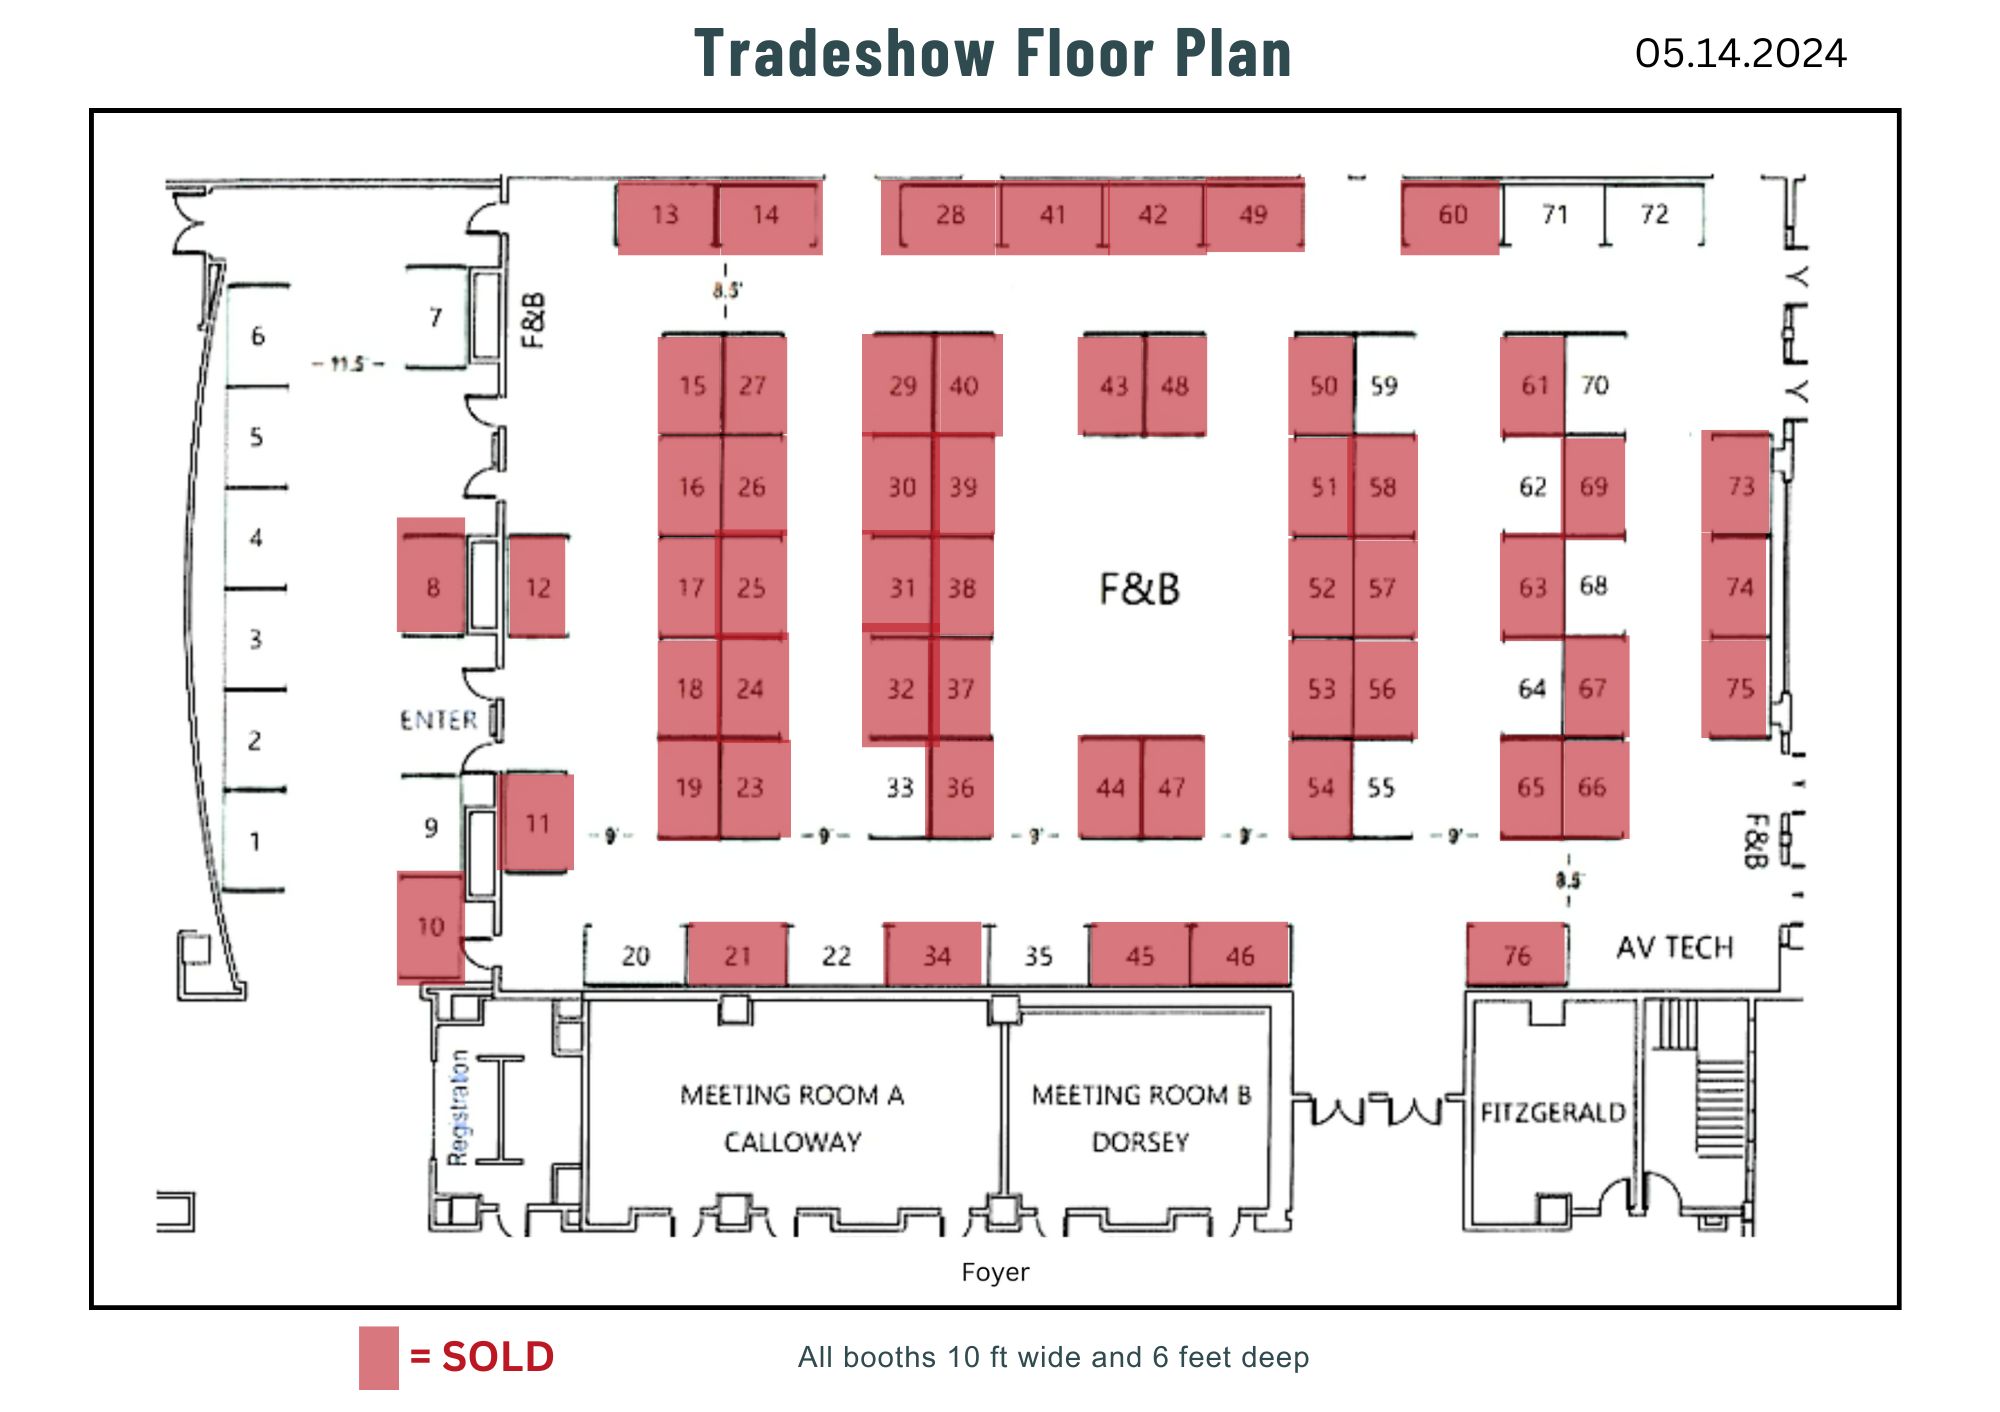 Trade Show 05.14.2024.jpg